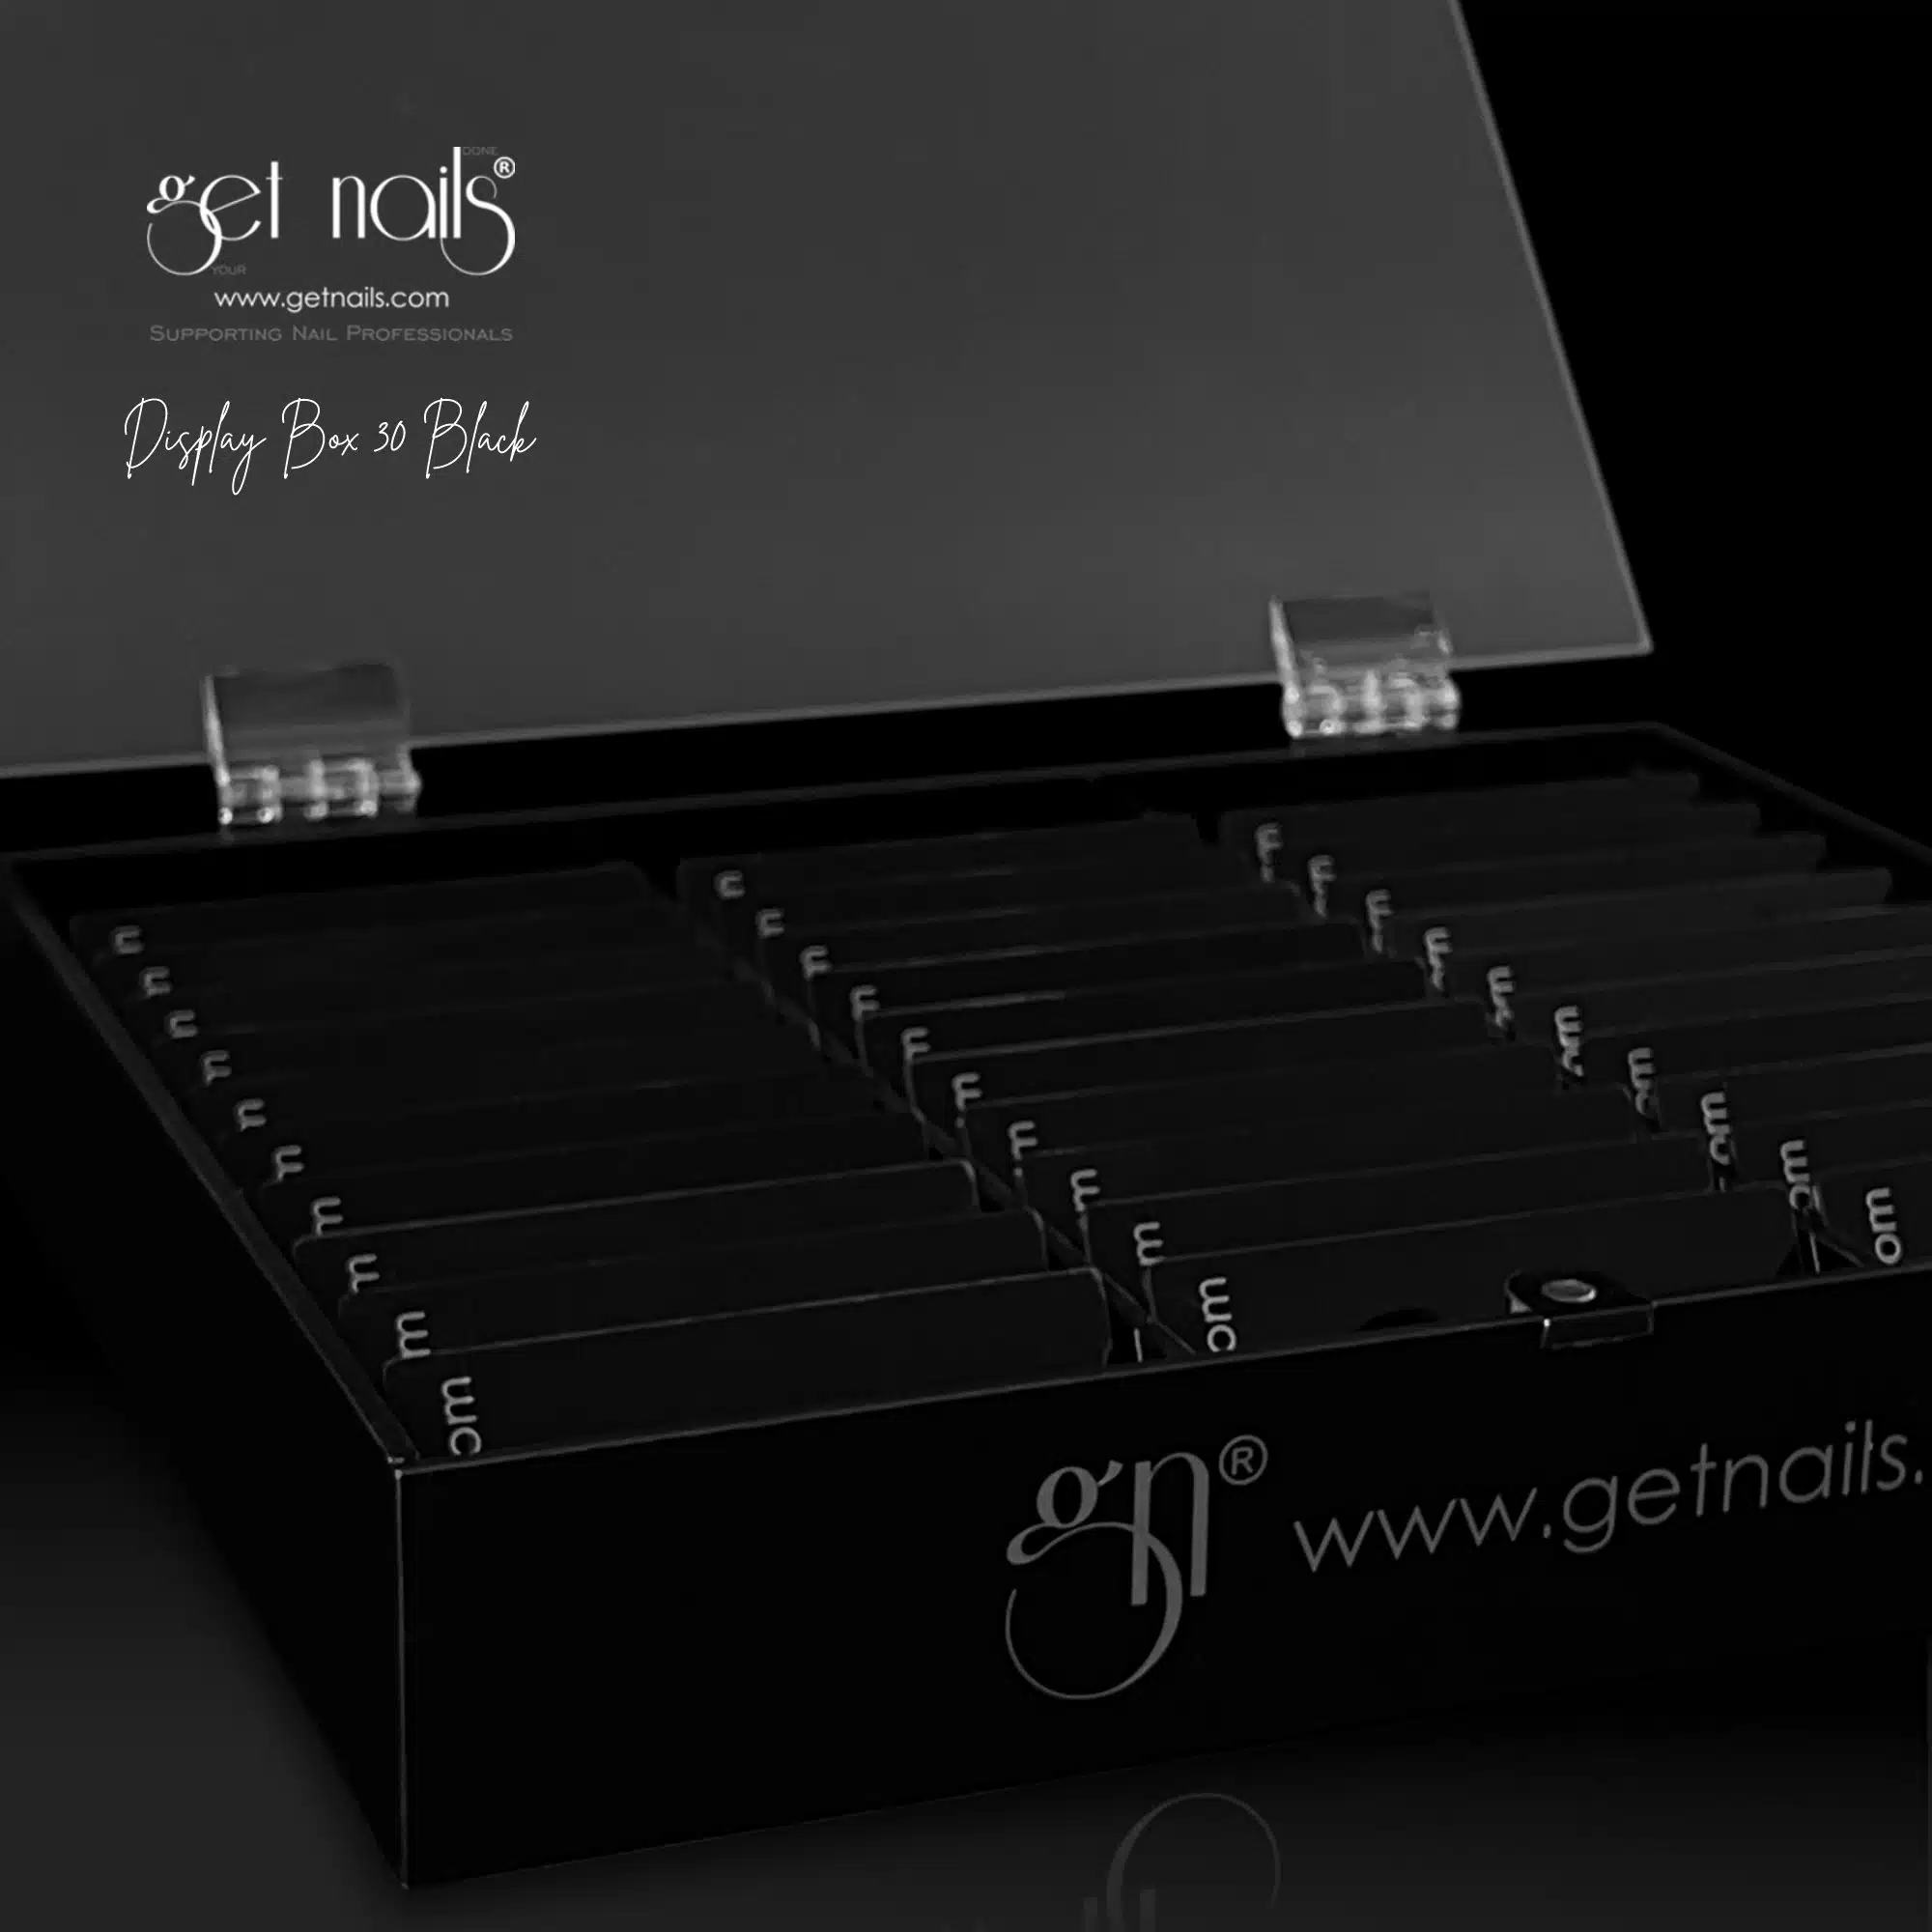 Get Nails Austria - Sale